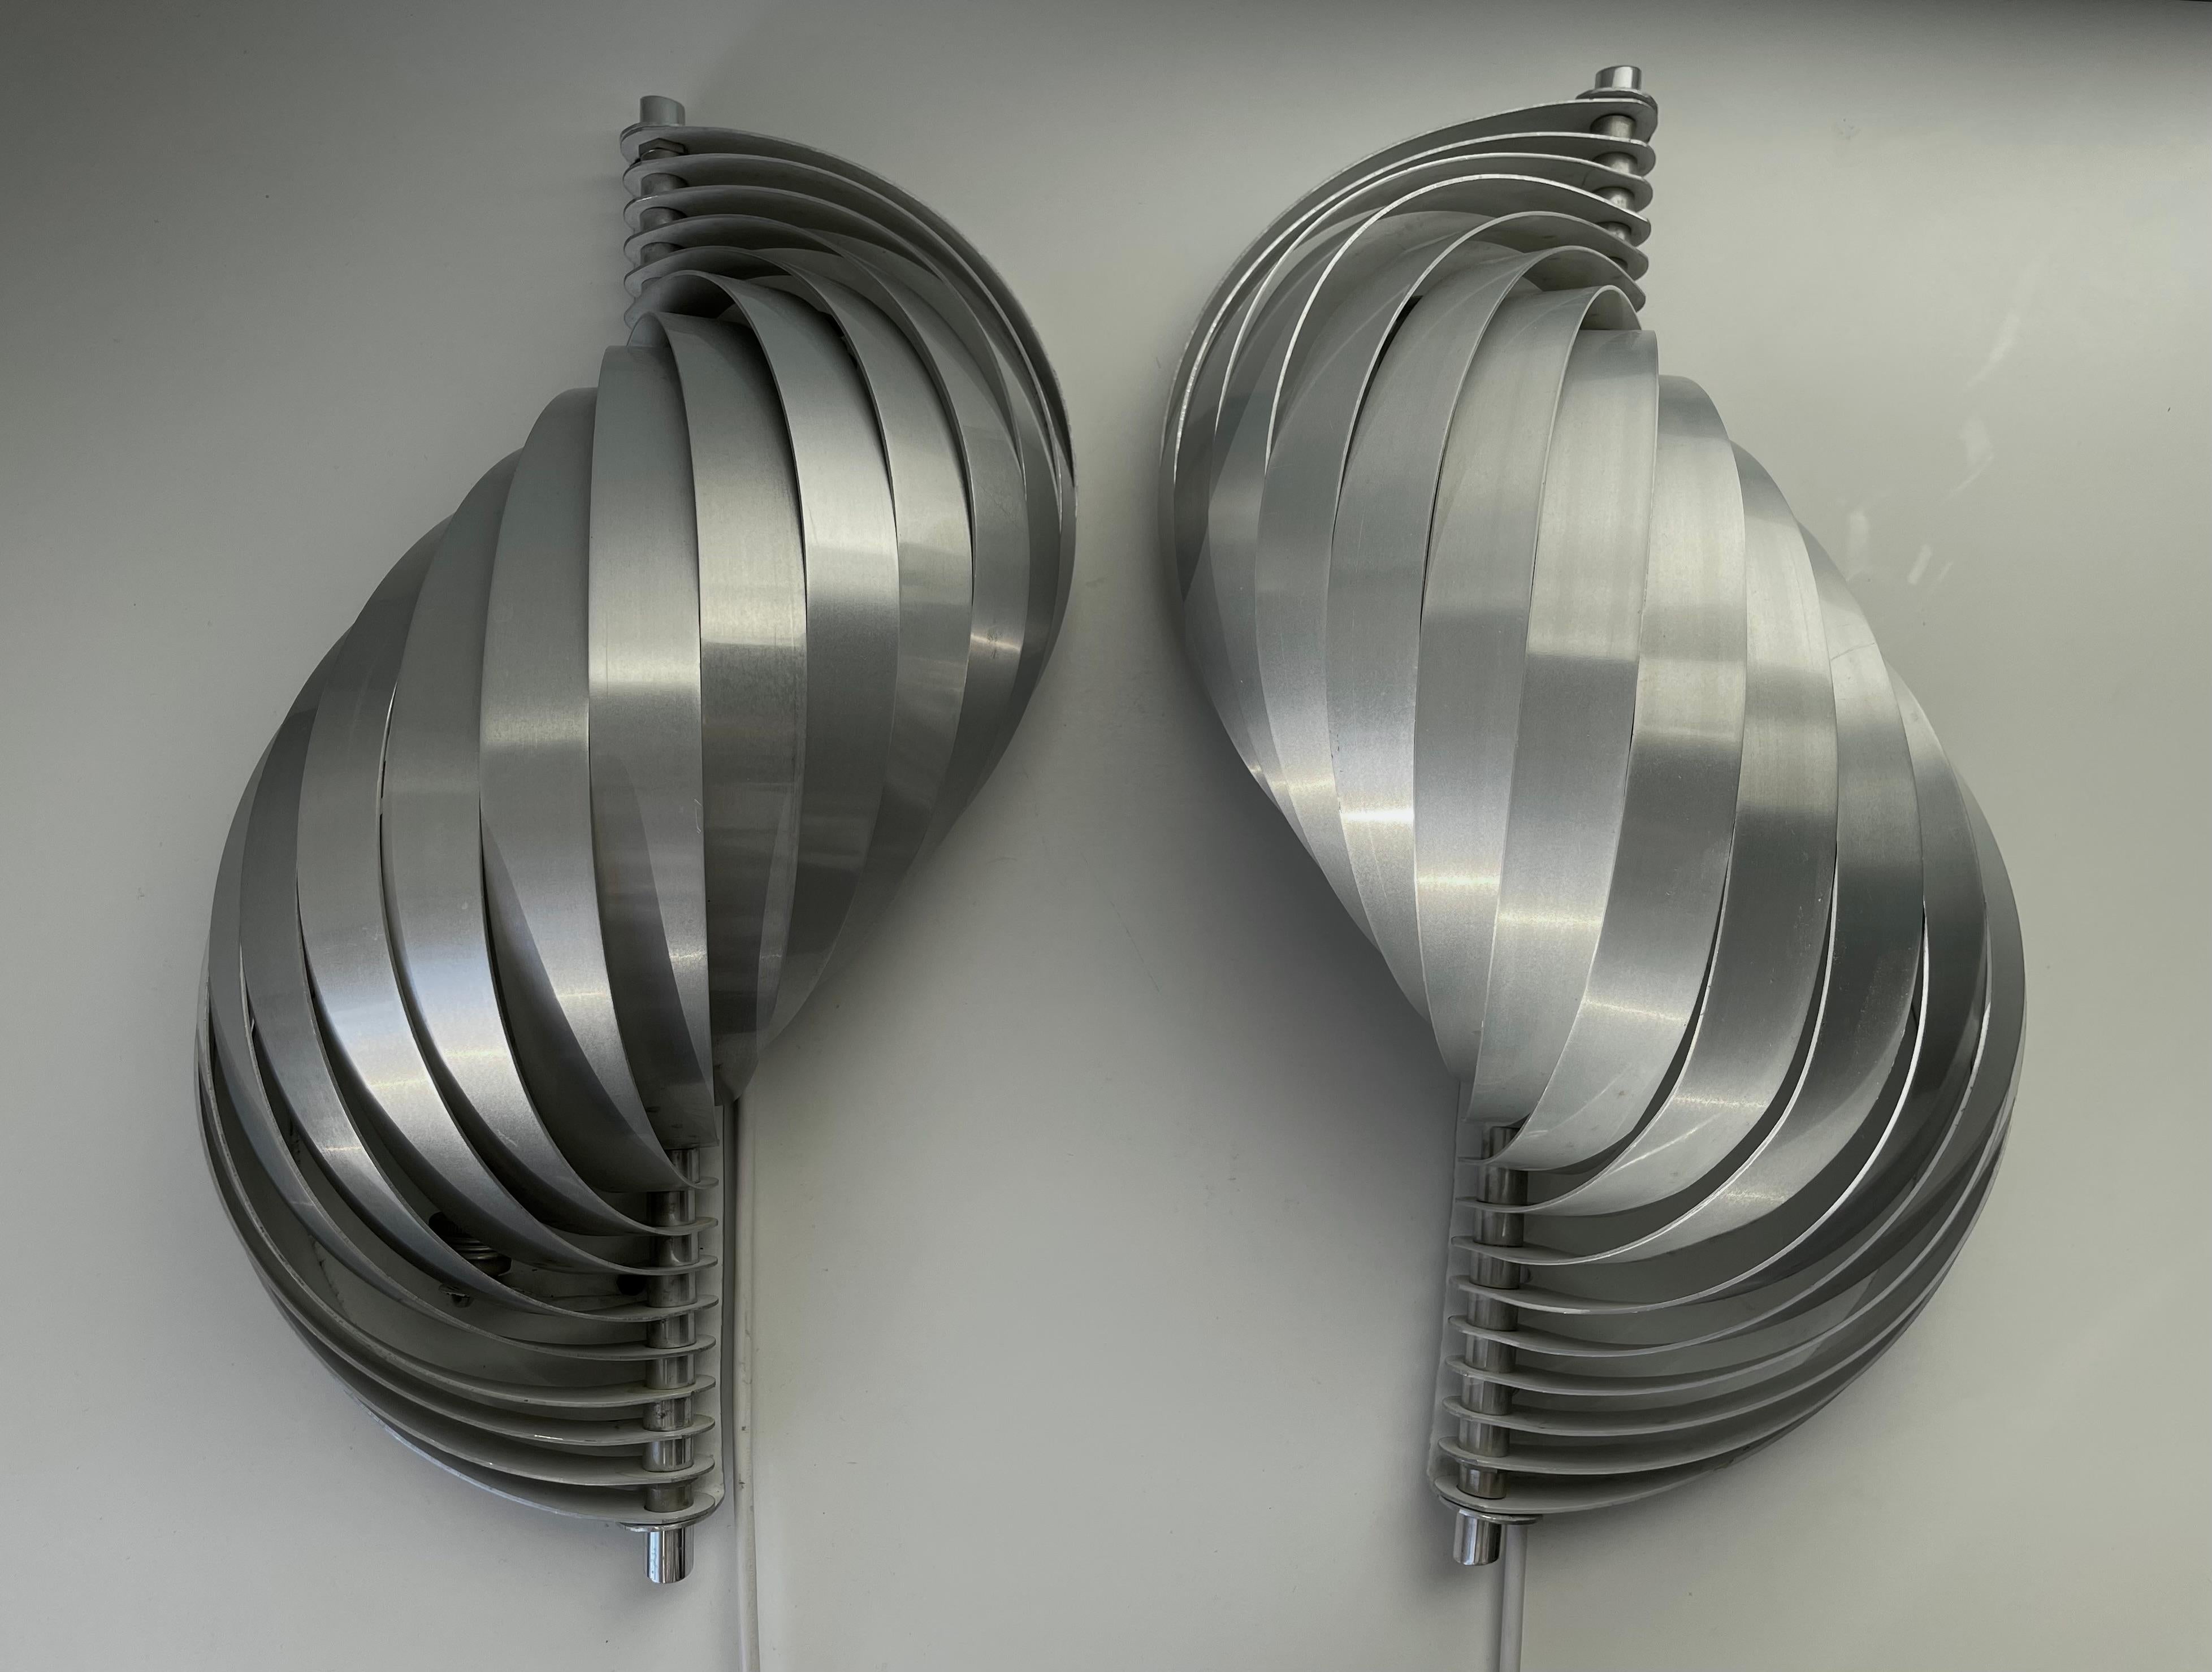 Superbe paire d'appliques murales futuristes en aluminium brillant en forme de coquille, réalisées par le designer français Henri Mathieu au début des années 1970. Des lamelles en aluminium brossé, doucement courbées et de couleur argentée composent